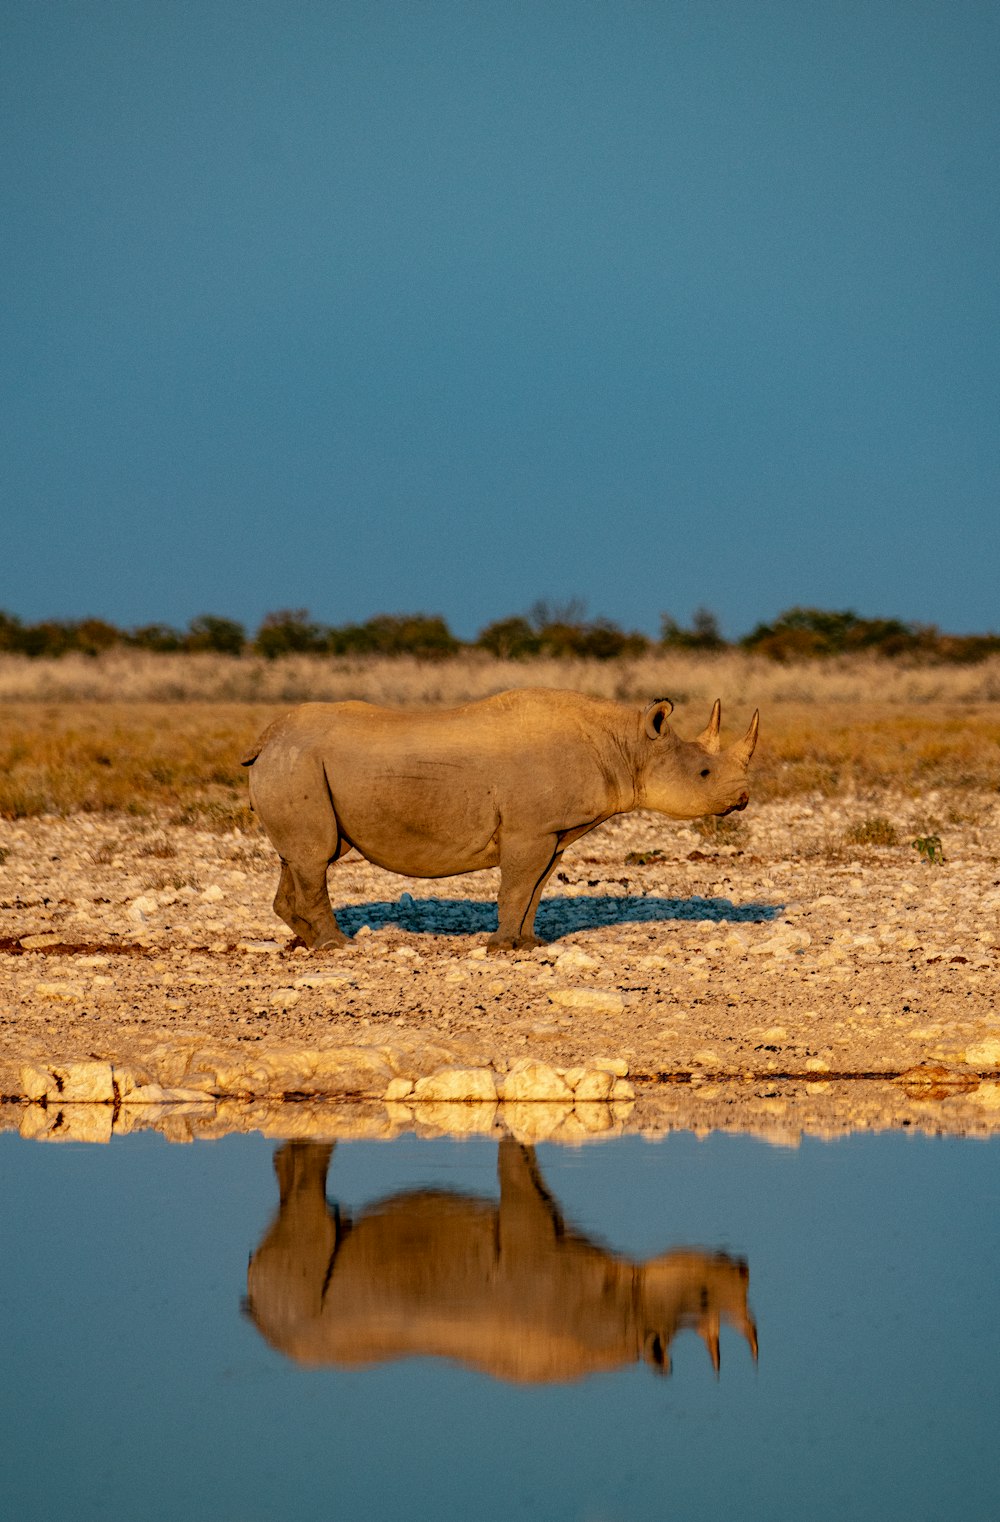 Un rhinocéros debout dans un champ à côté d’un plan d’eau